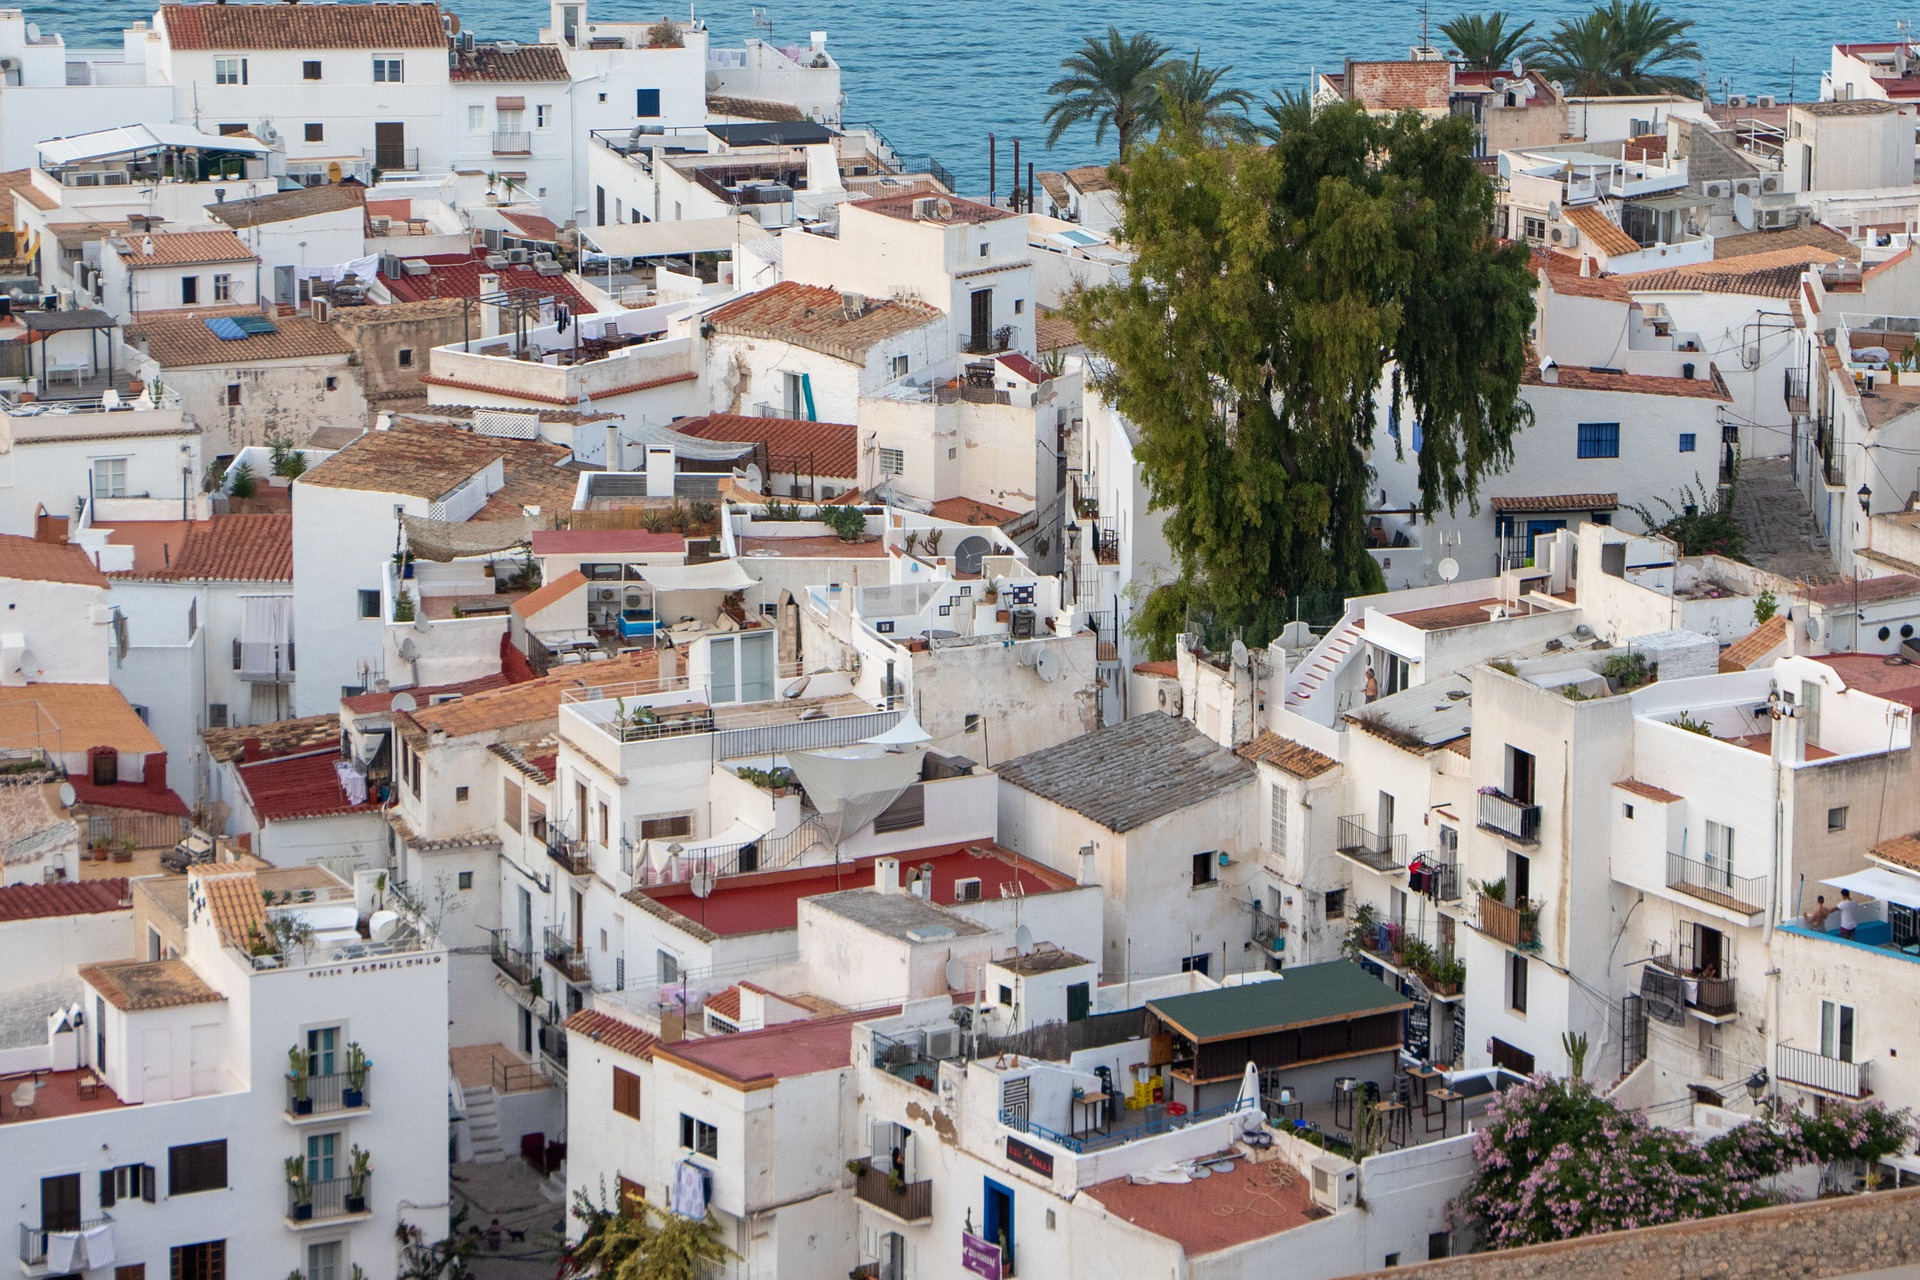 Les 3 principaux aspects fiscaux à considérer lors de l’achat d’une maison de vacances en Espagne